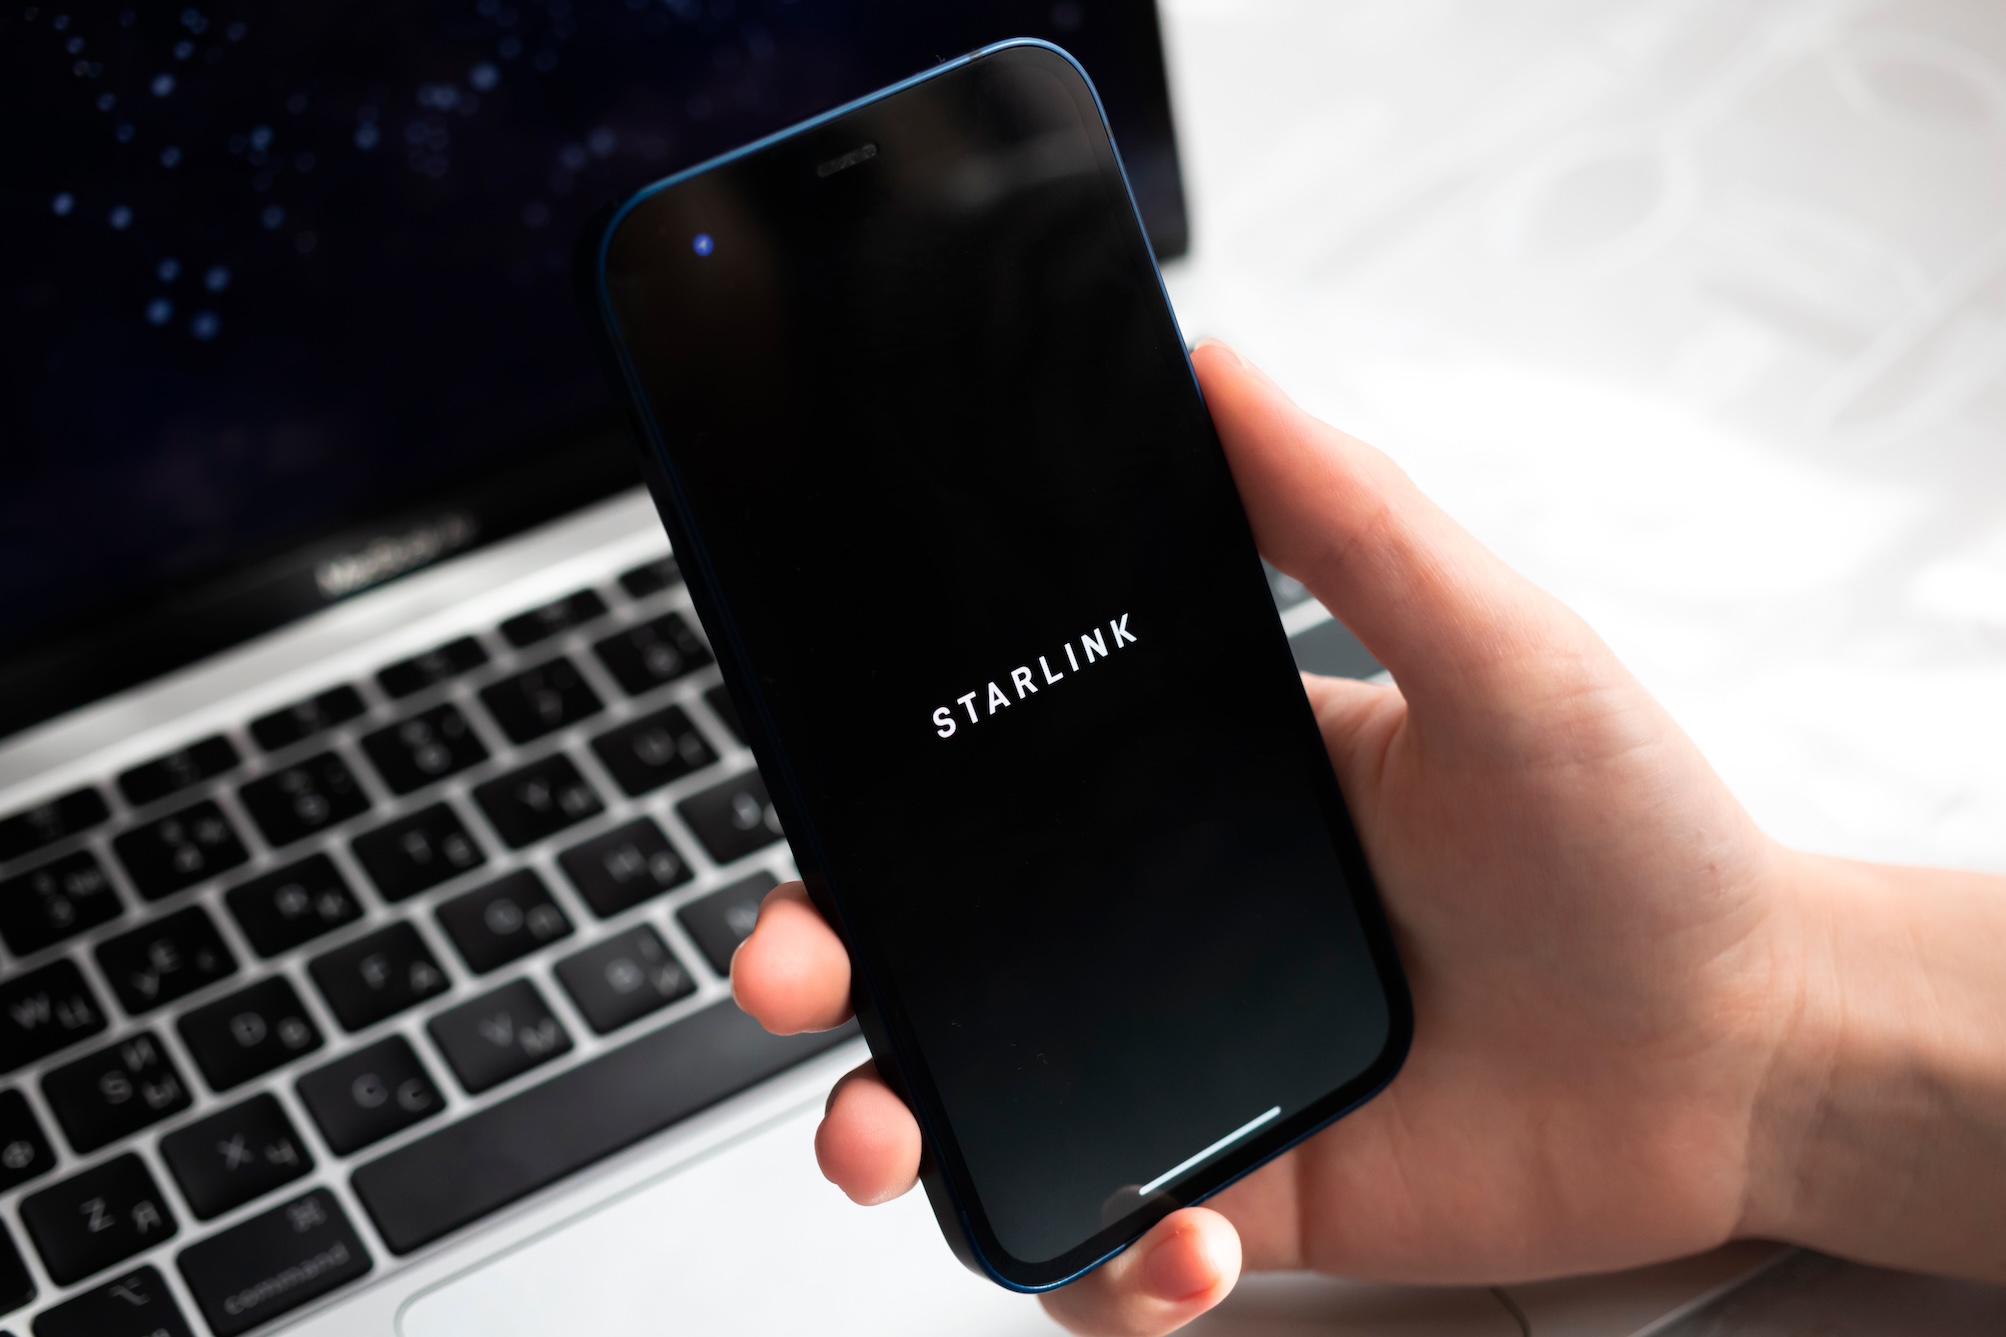 Starlink publie la démonstration de son tout premier appel vidéo par satellite à l'aide de smartphones normaux